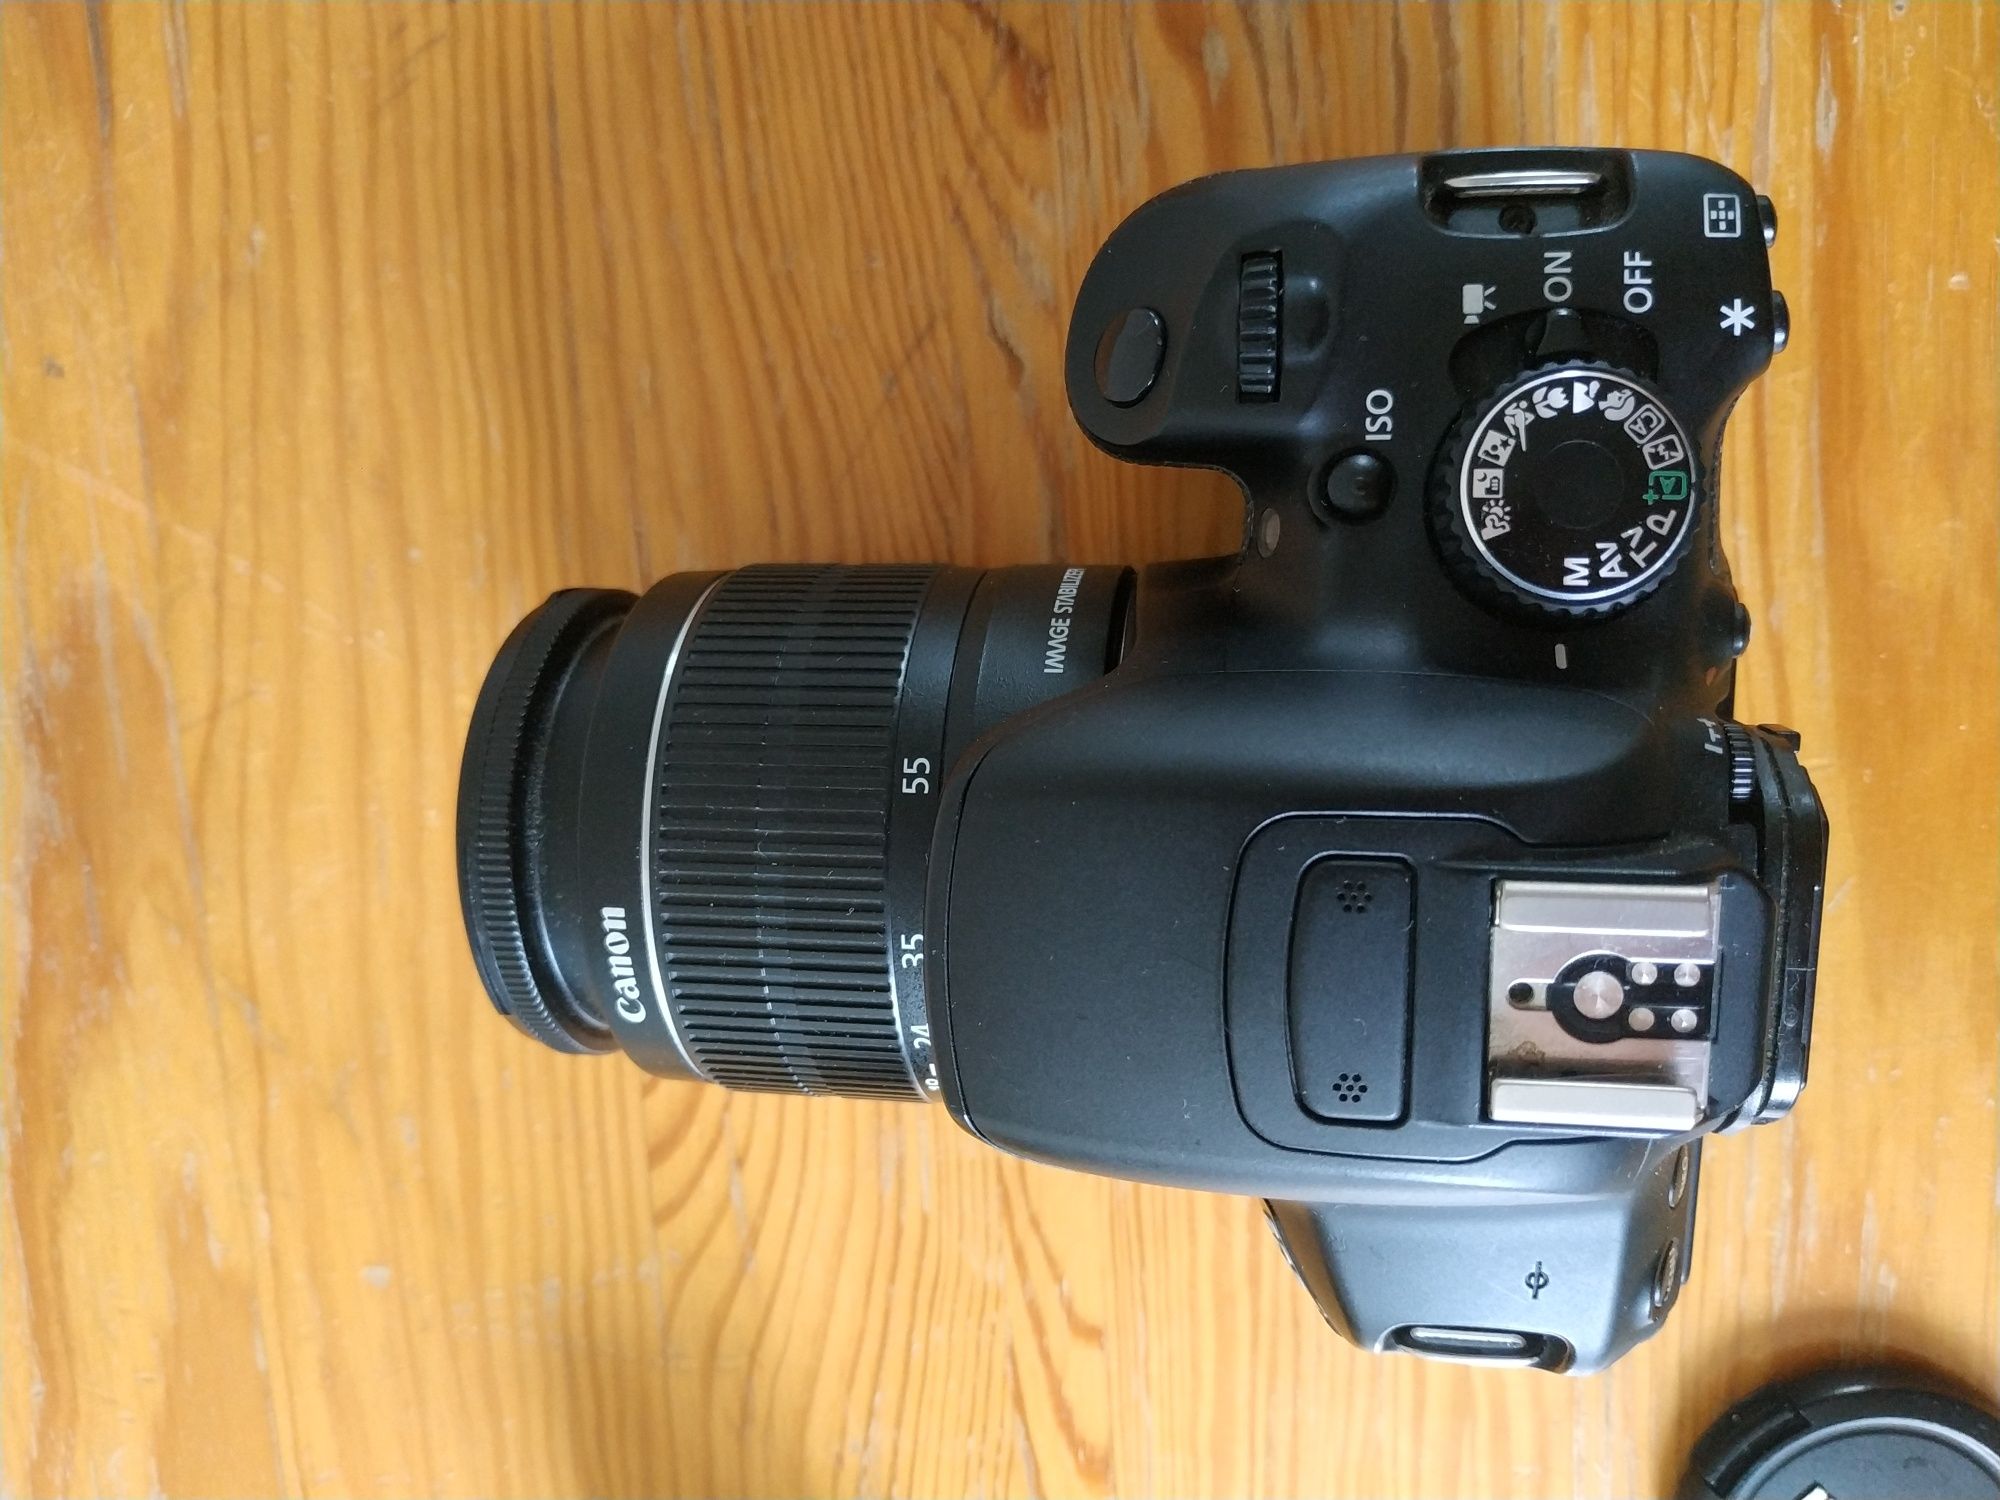 Camera Canon EOS 650D